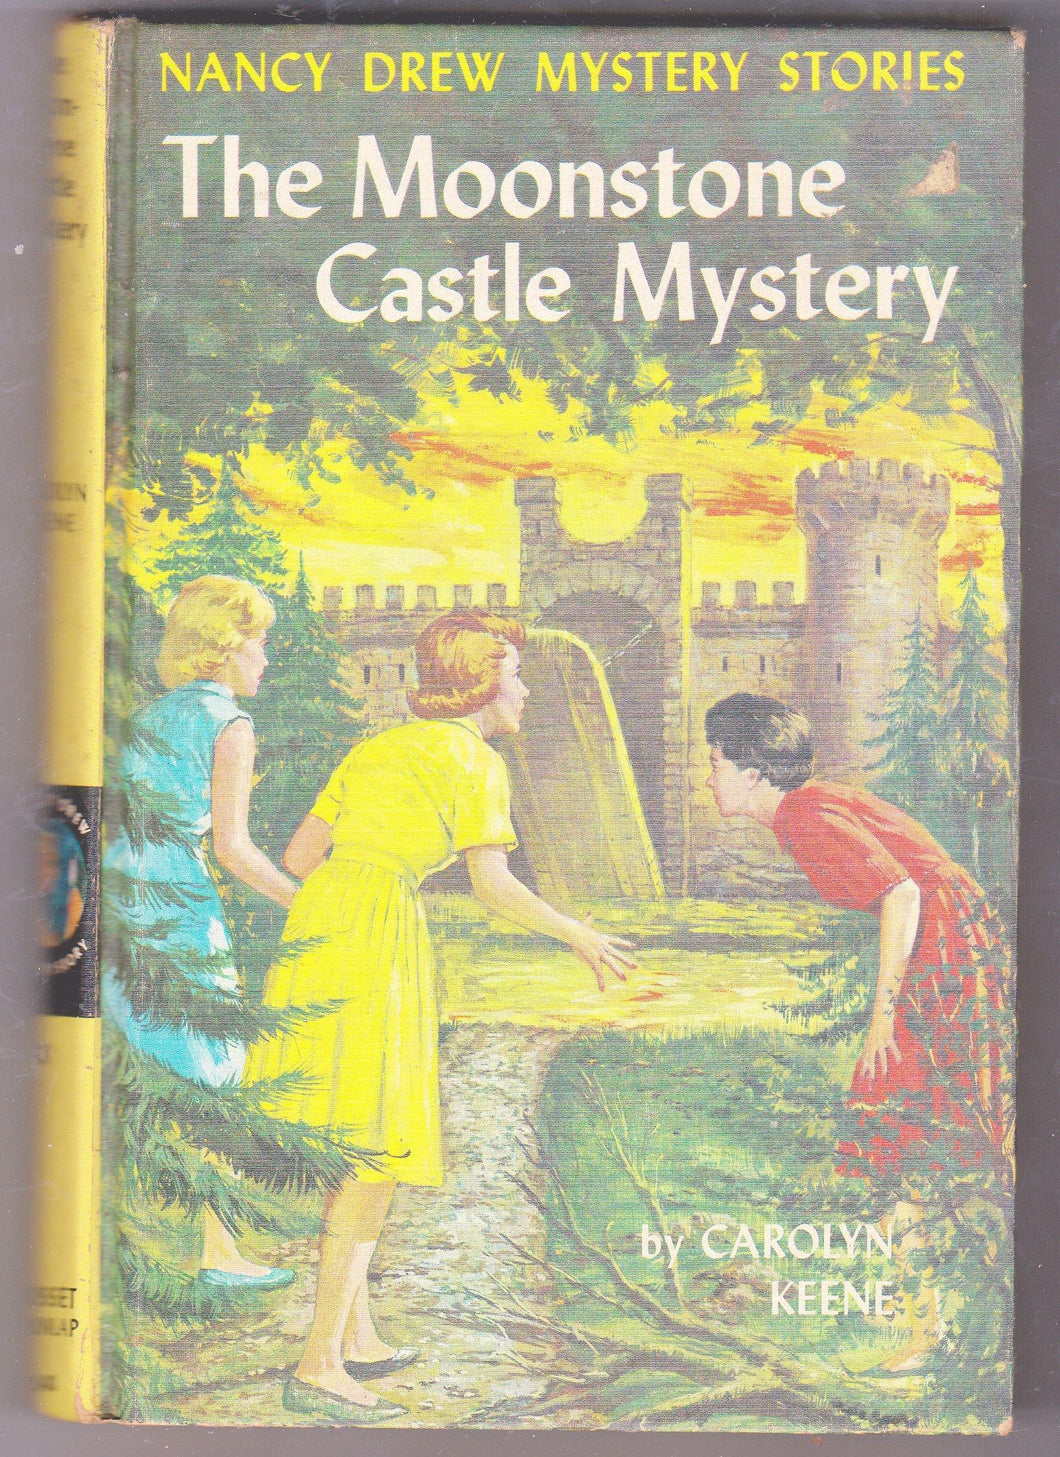 Nancy Drew Mystery Stories The Moonstone Castle Mystery Carolyn Keene 1963 - TulipStuff